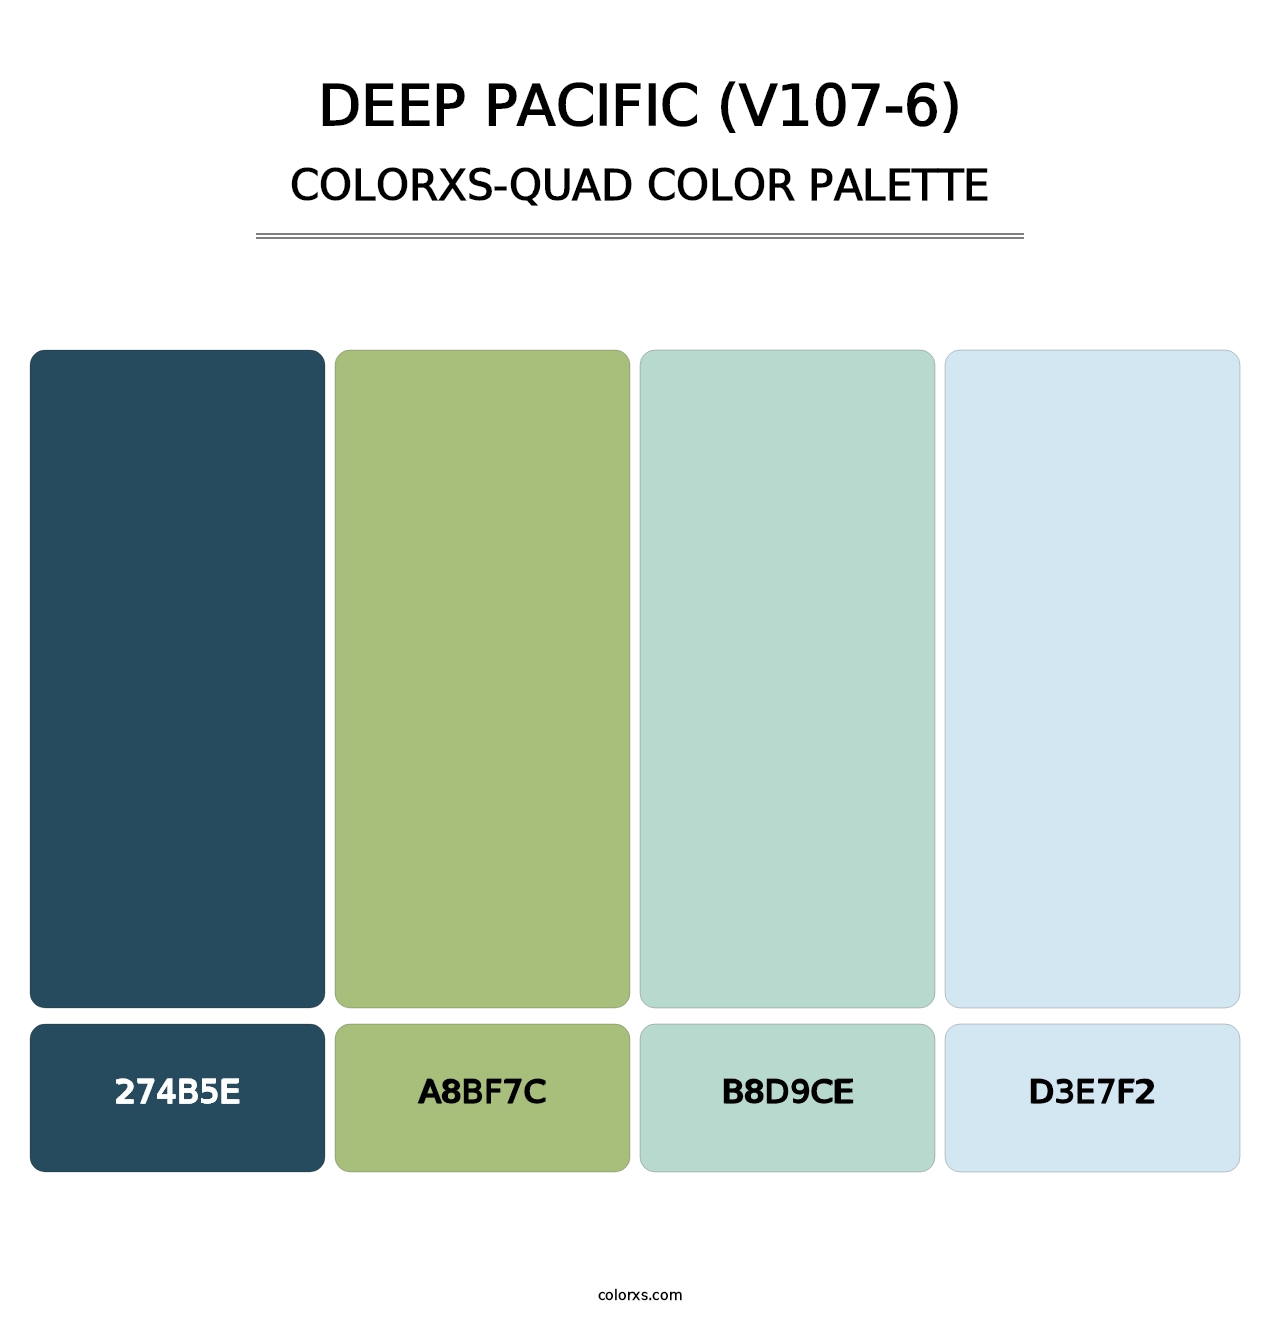 Deep Pacific (V107-6) - Colorxs Quad Palette